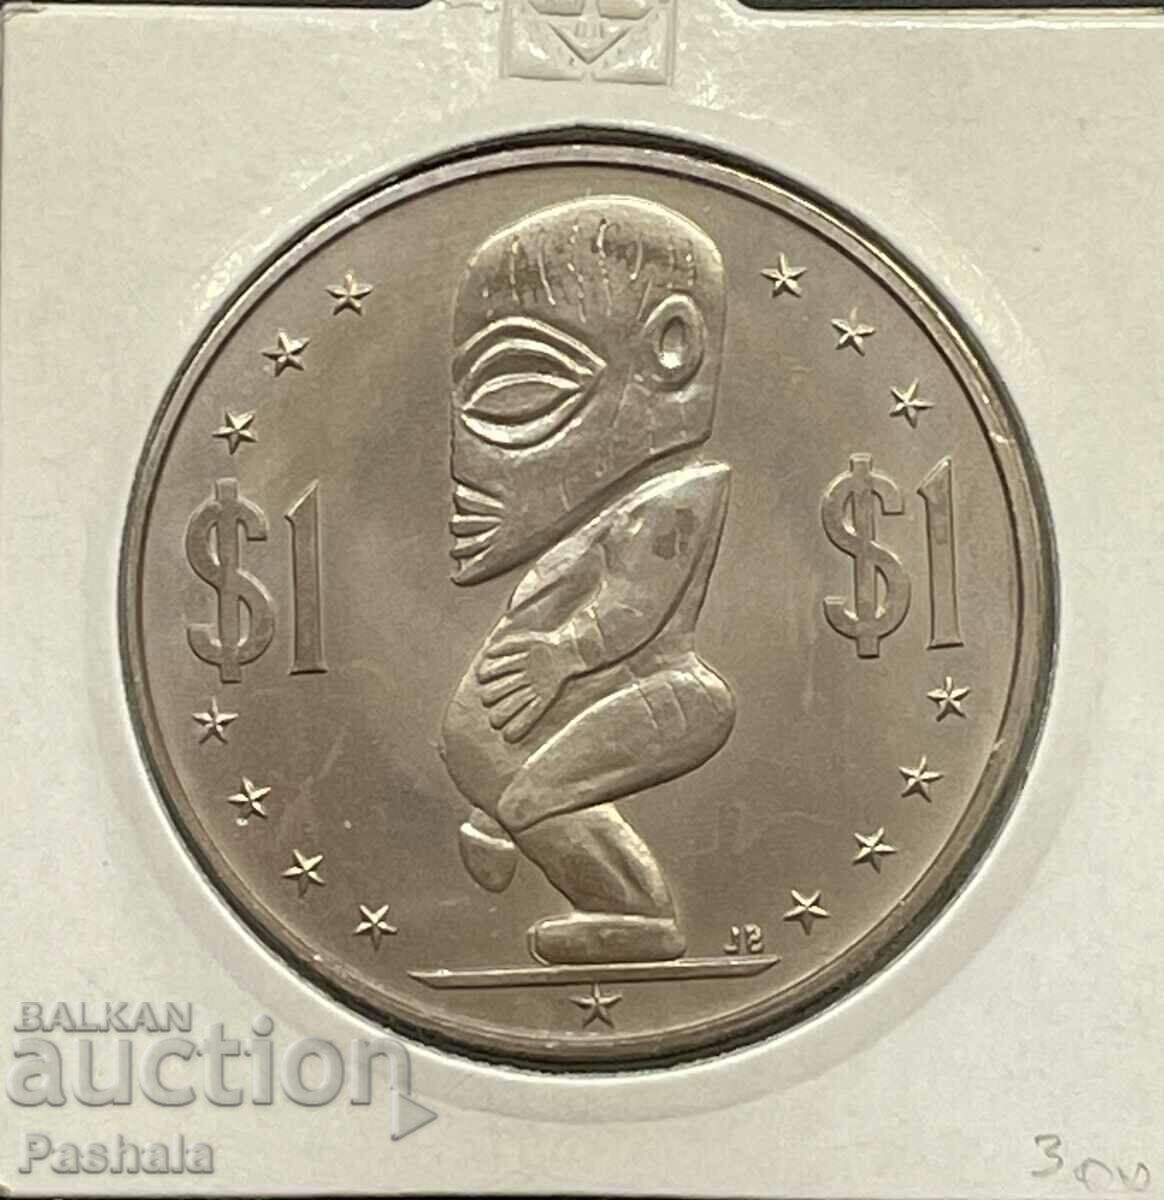 Cook Islands $1 1974